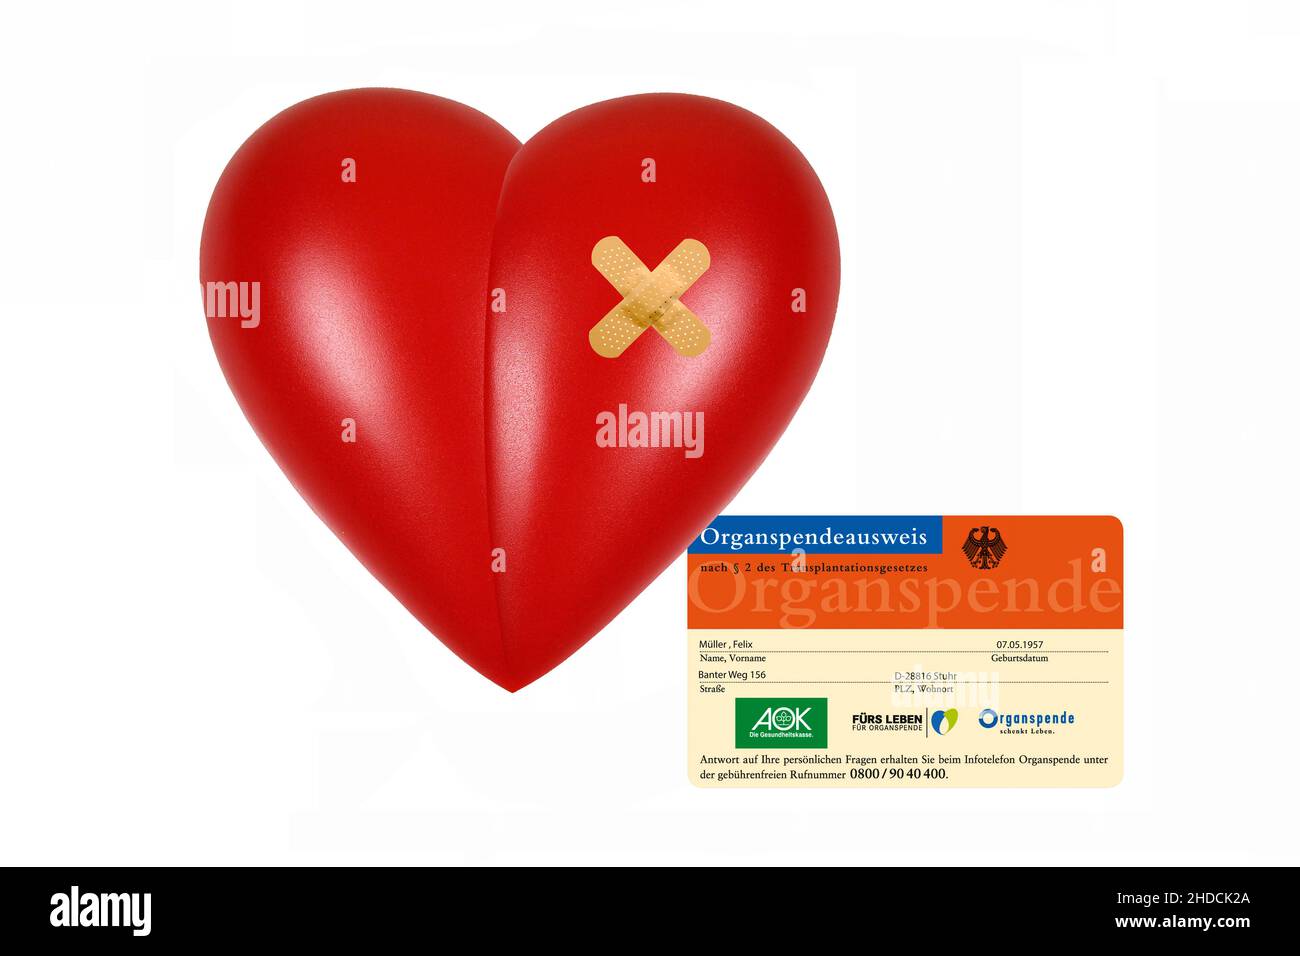 Rotes Herz, Organ, Gesundheit, Körperteil, Pflaster, Organspendeausweis, Operiertes Herz, Operation, Stock Photo